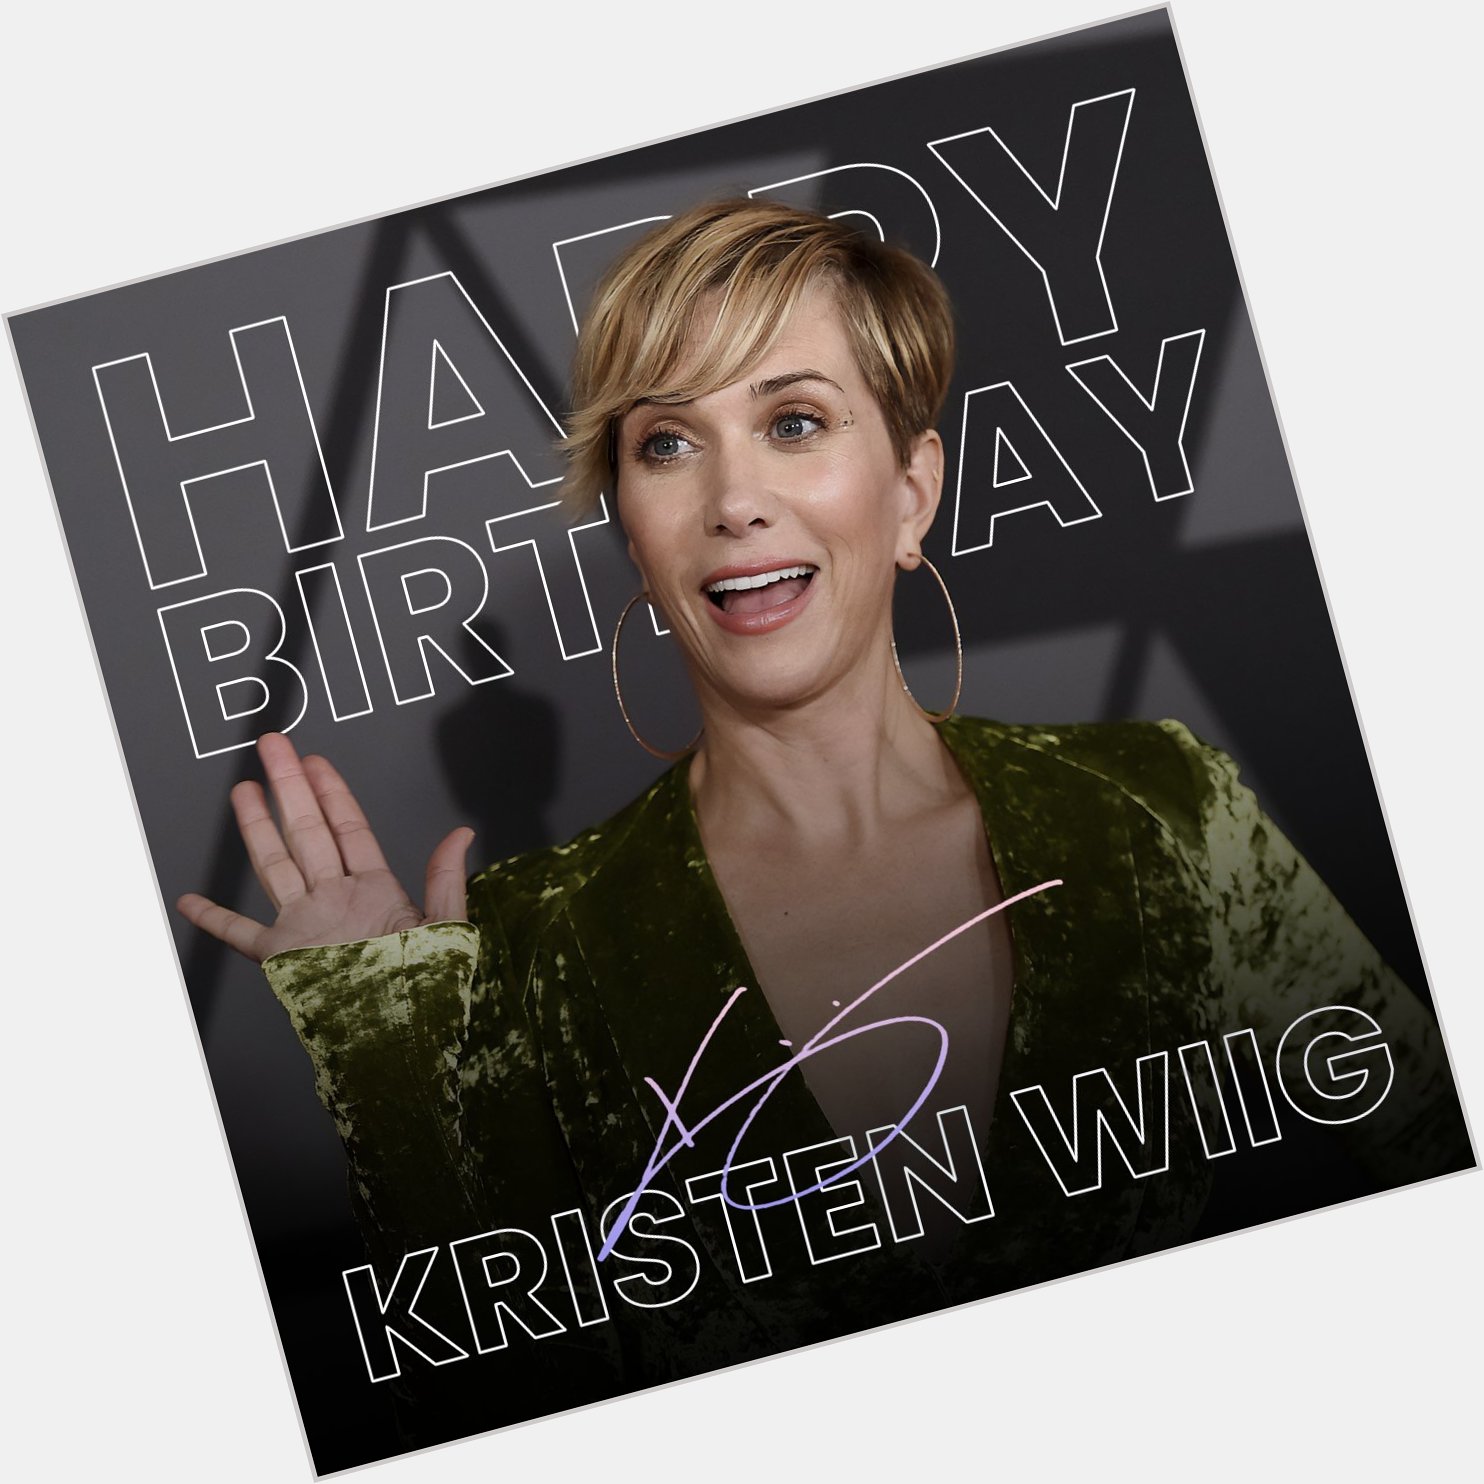 Happy Birthday to the marvelous Kristen Wiig!  